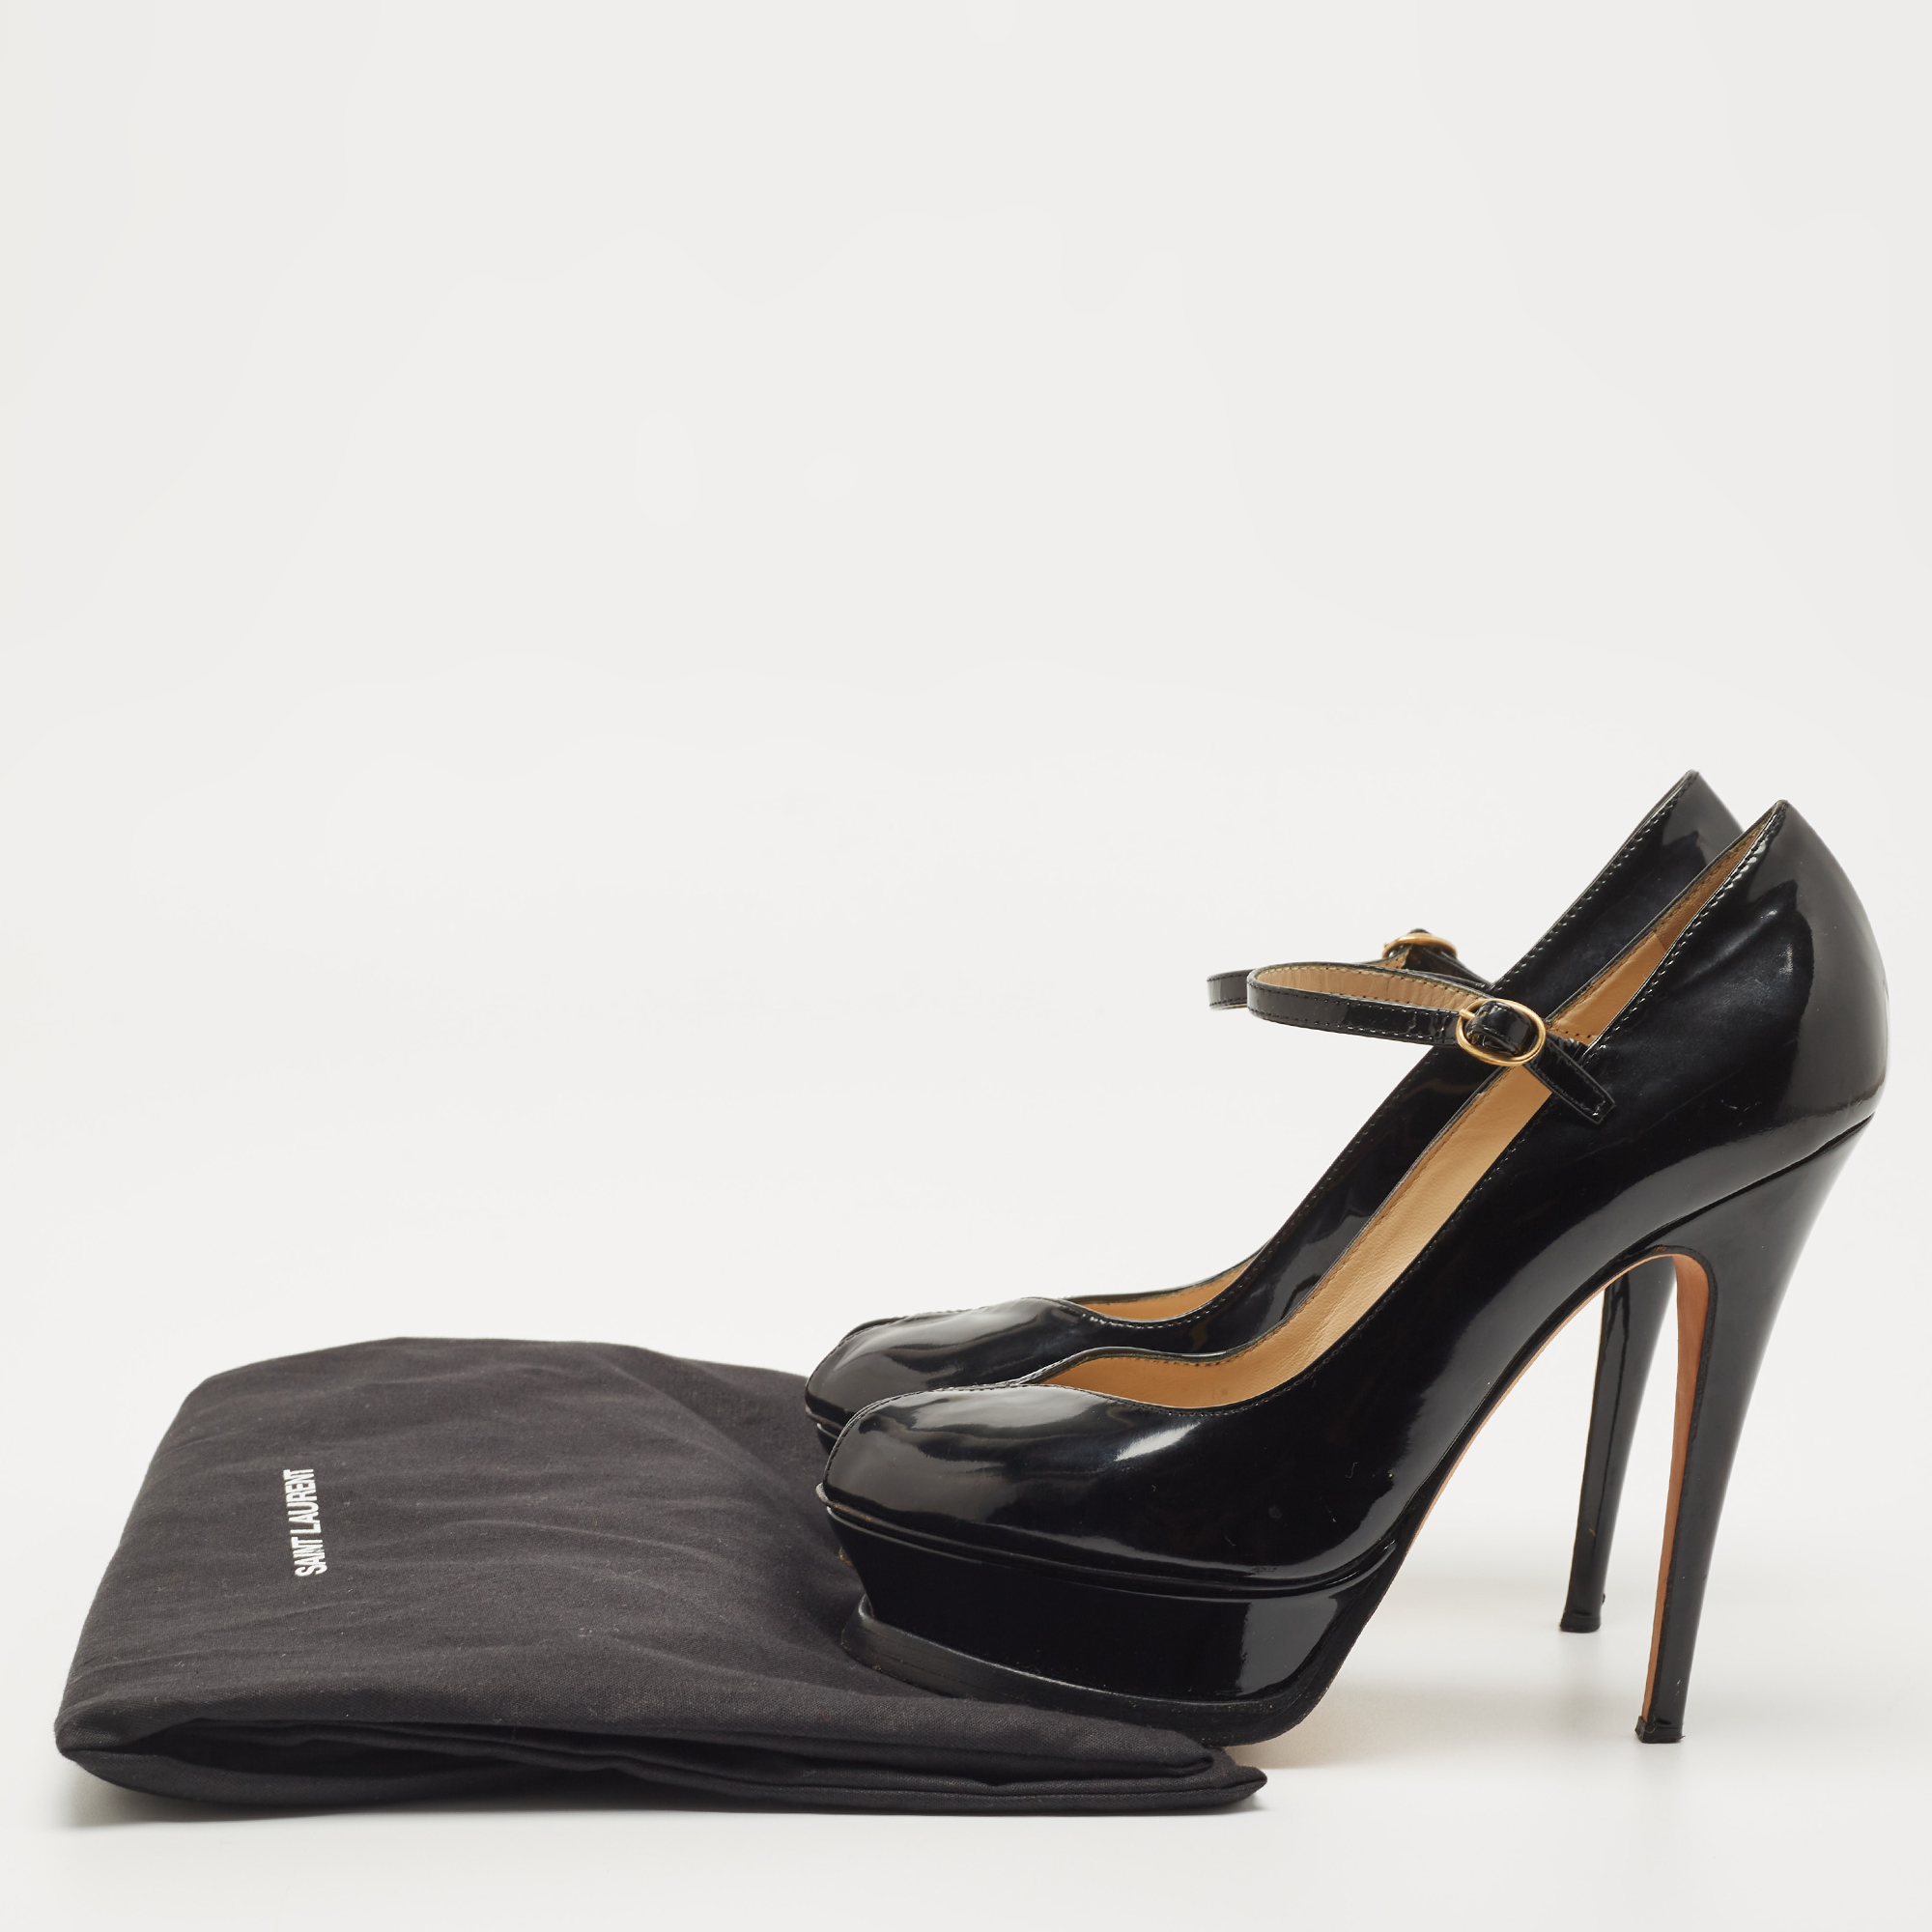 Yves Saint Laurent Black Patent Tribute Ankle Strap Pumps Size 37.5